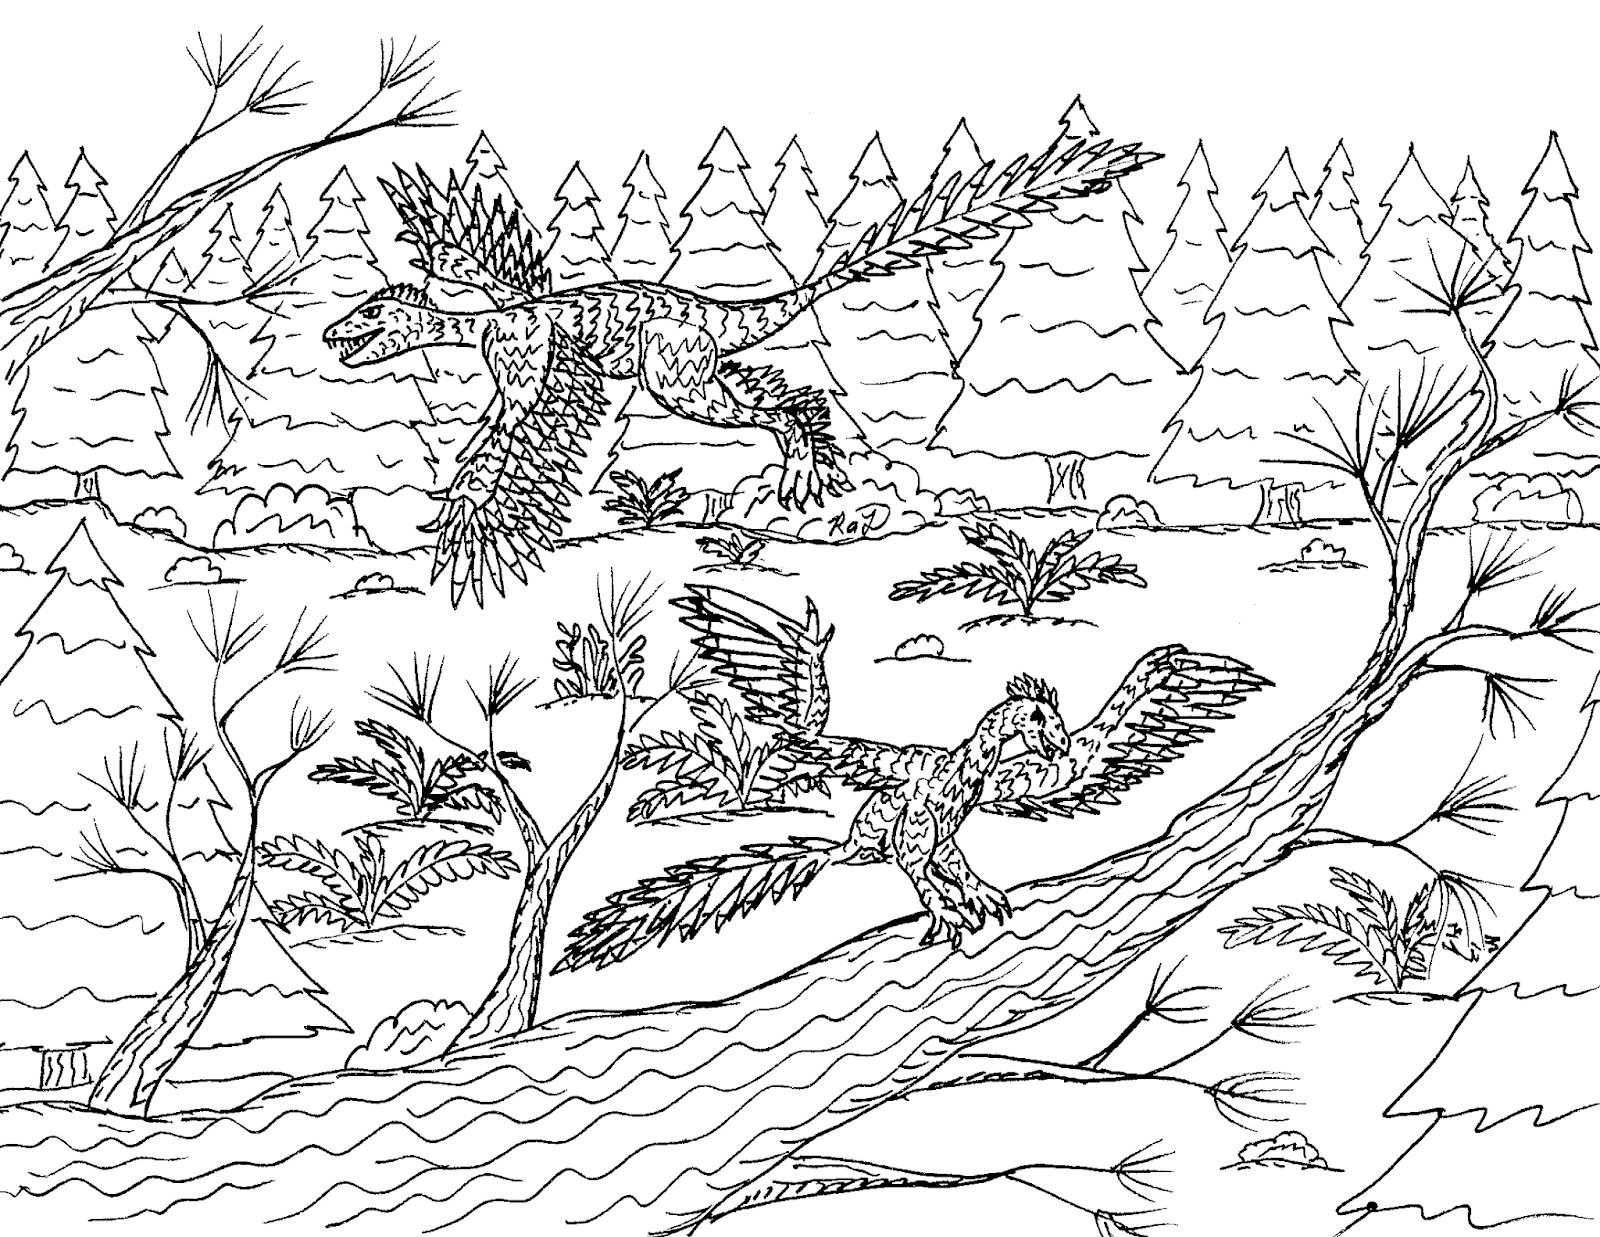 Archaeopteryx-Paar im Wald von Archaeopteryx